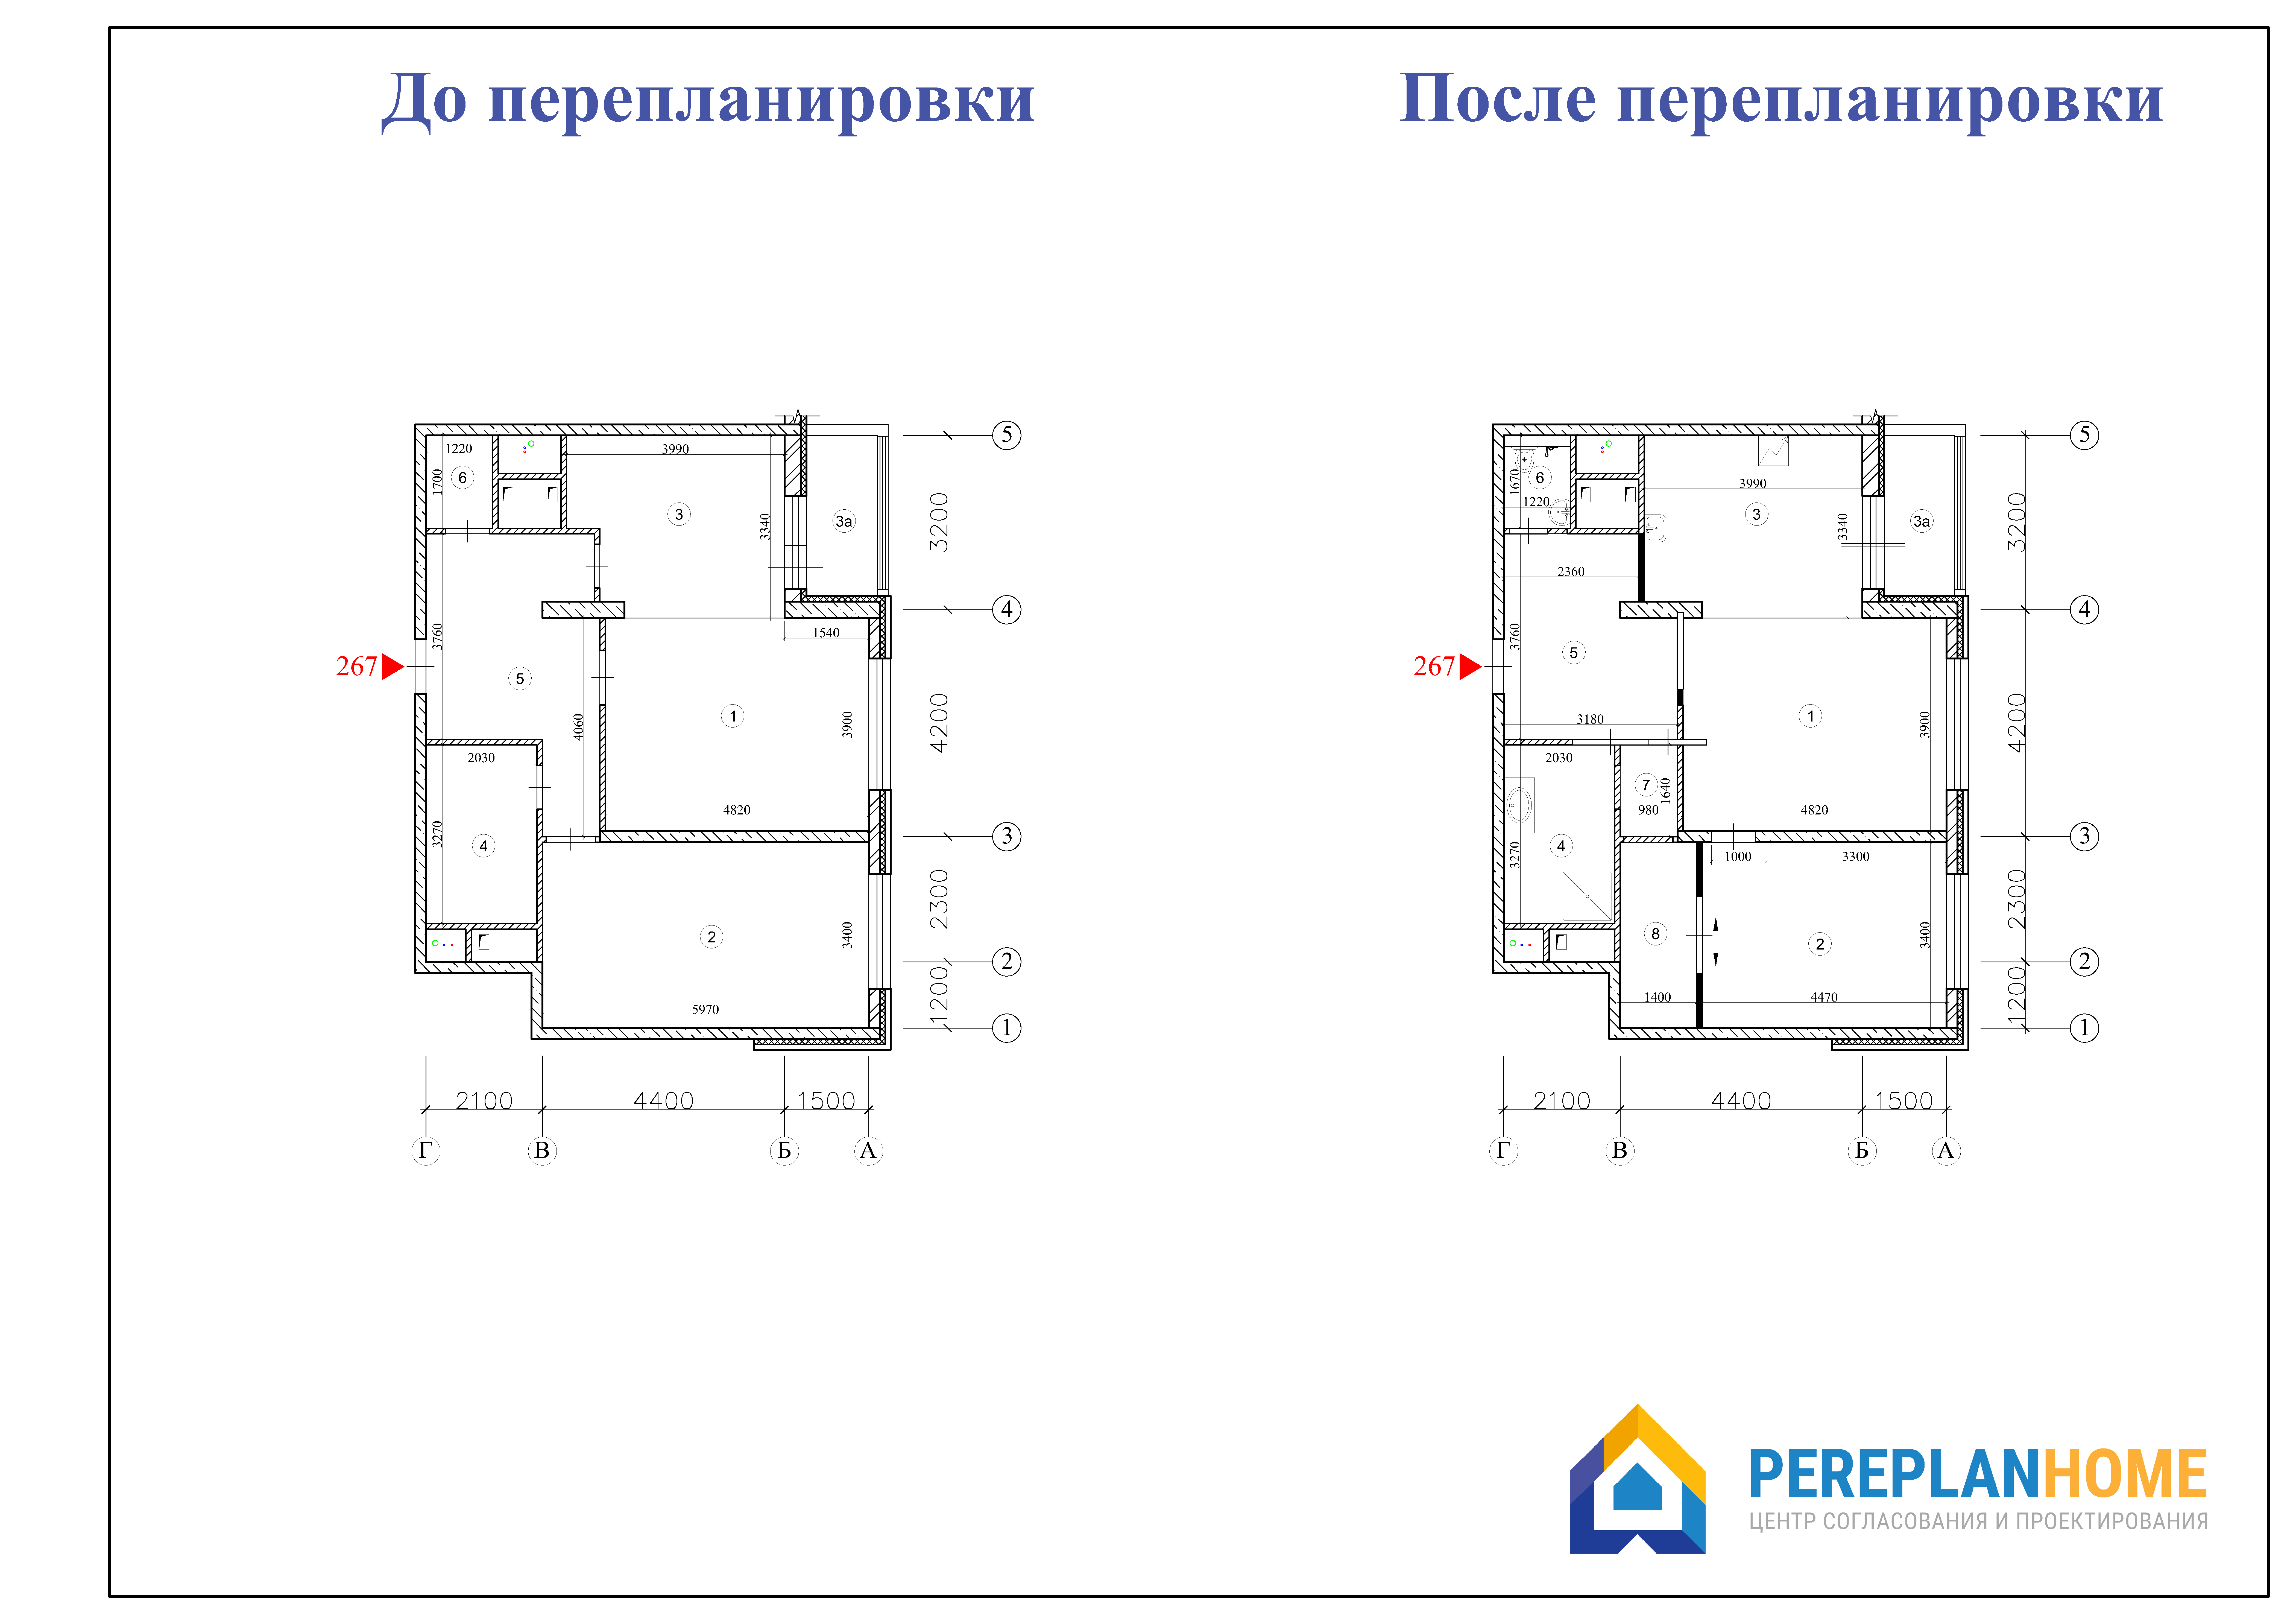 Перепланировка жк рф. План перепланировки квартиры. Перепланировка чертеж. Перепланировка квартиры чертеж. План квартиры до и после перепланировки.